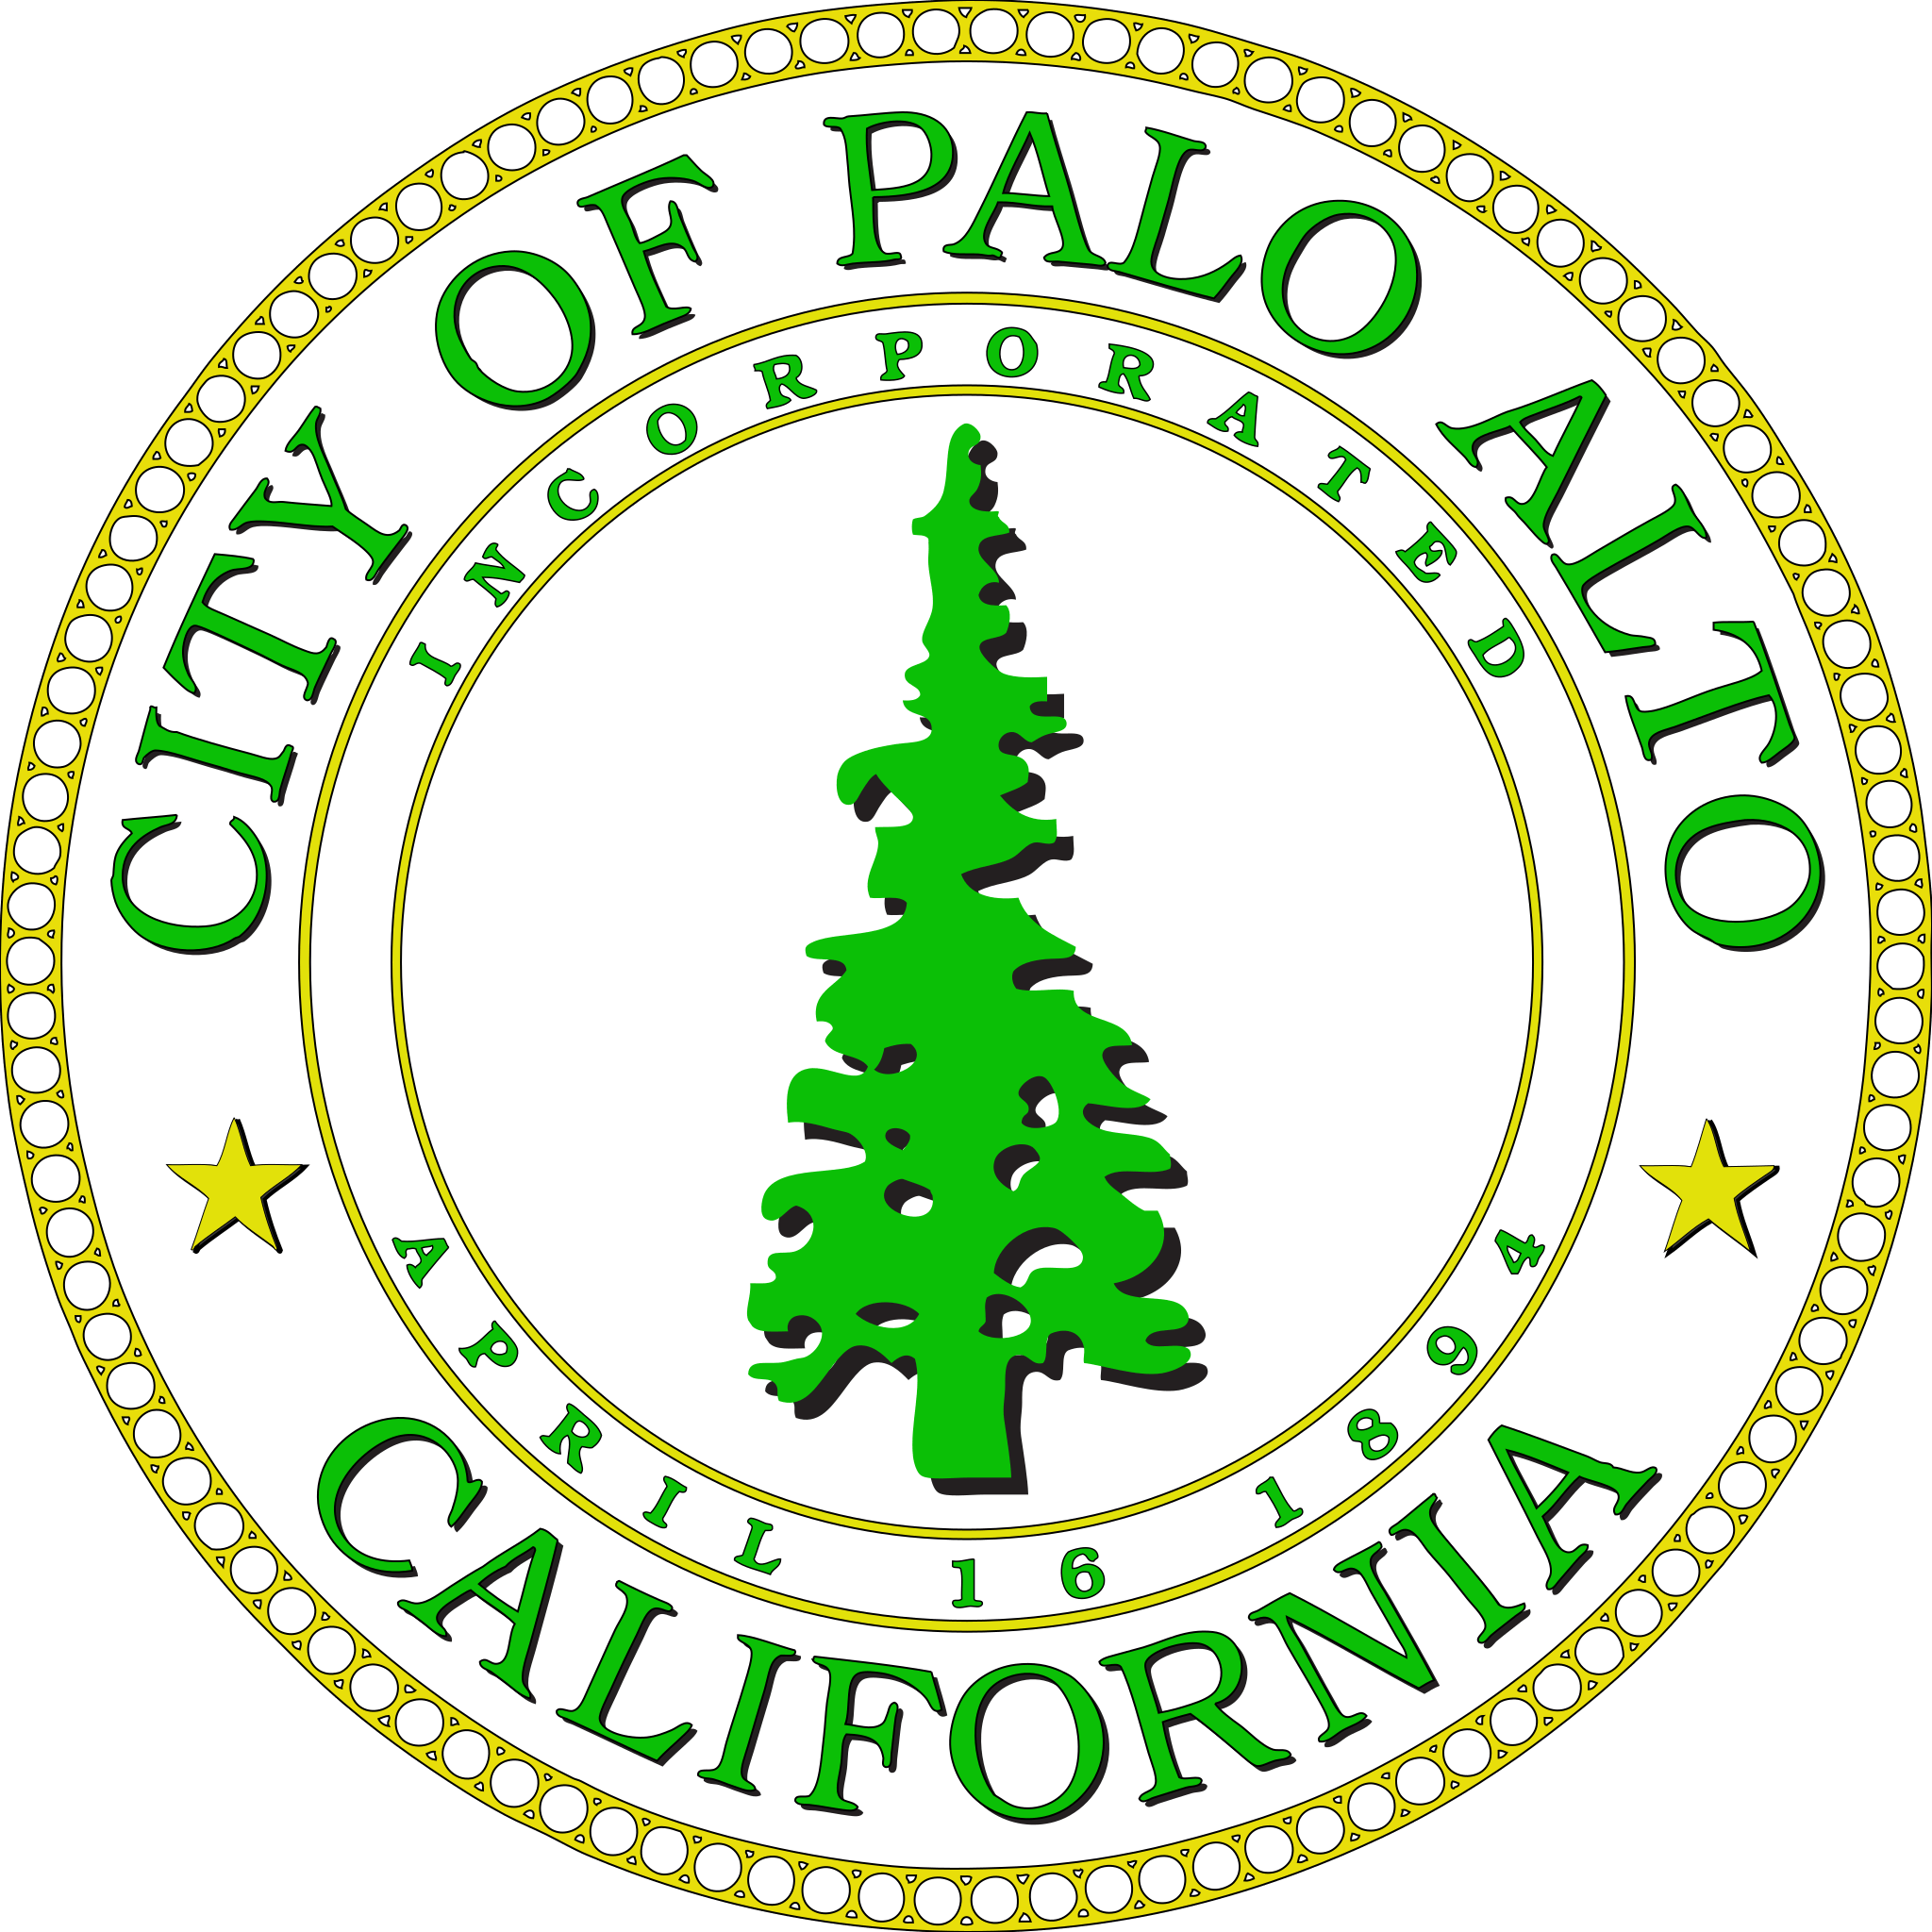  City of Palo Alto